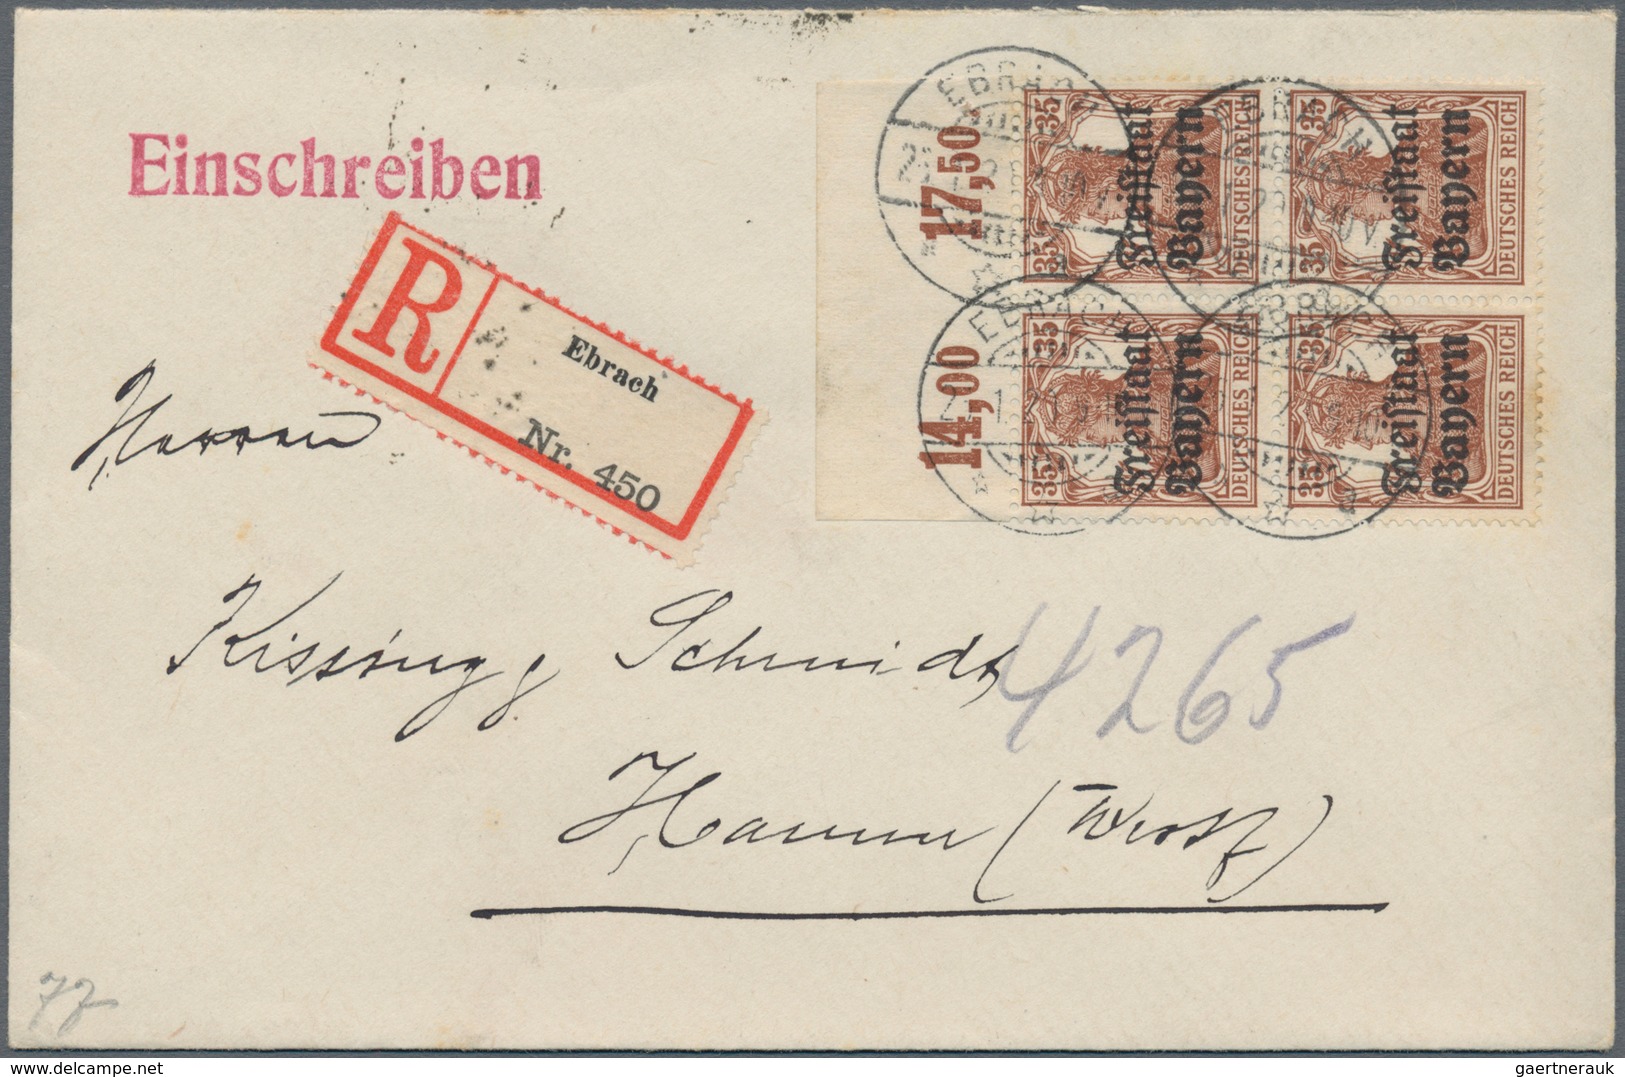 Bayern - Marken und Briefe: 1875-1920, toller Posten mit über 400 Briefen und Belegen, dabei Einschr